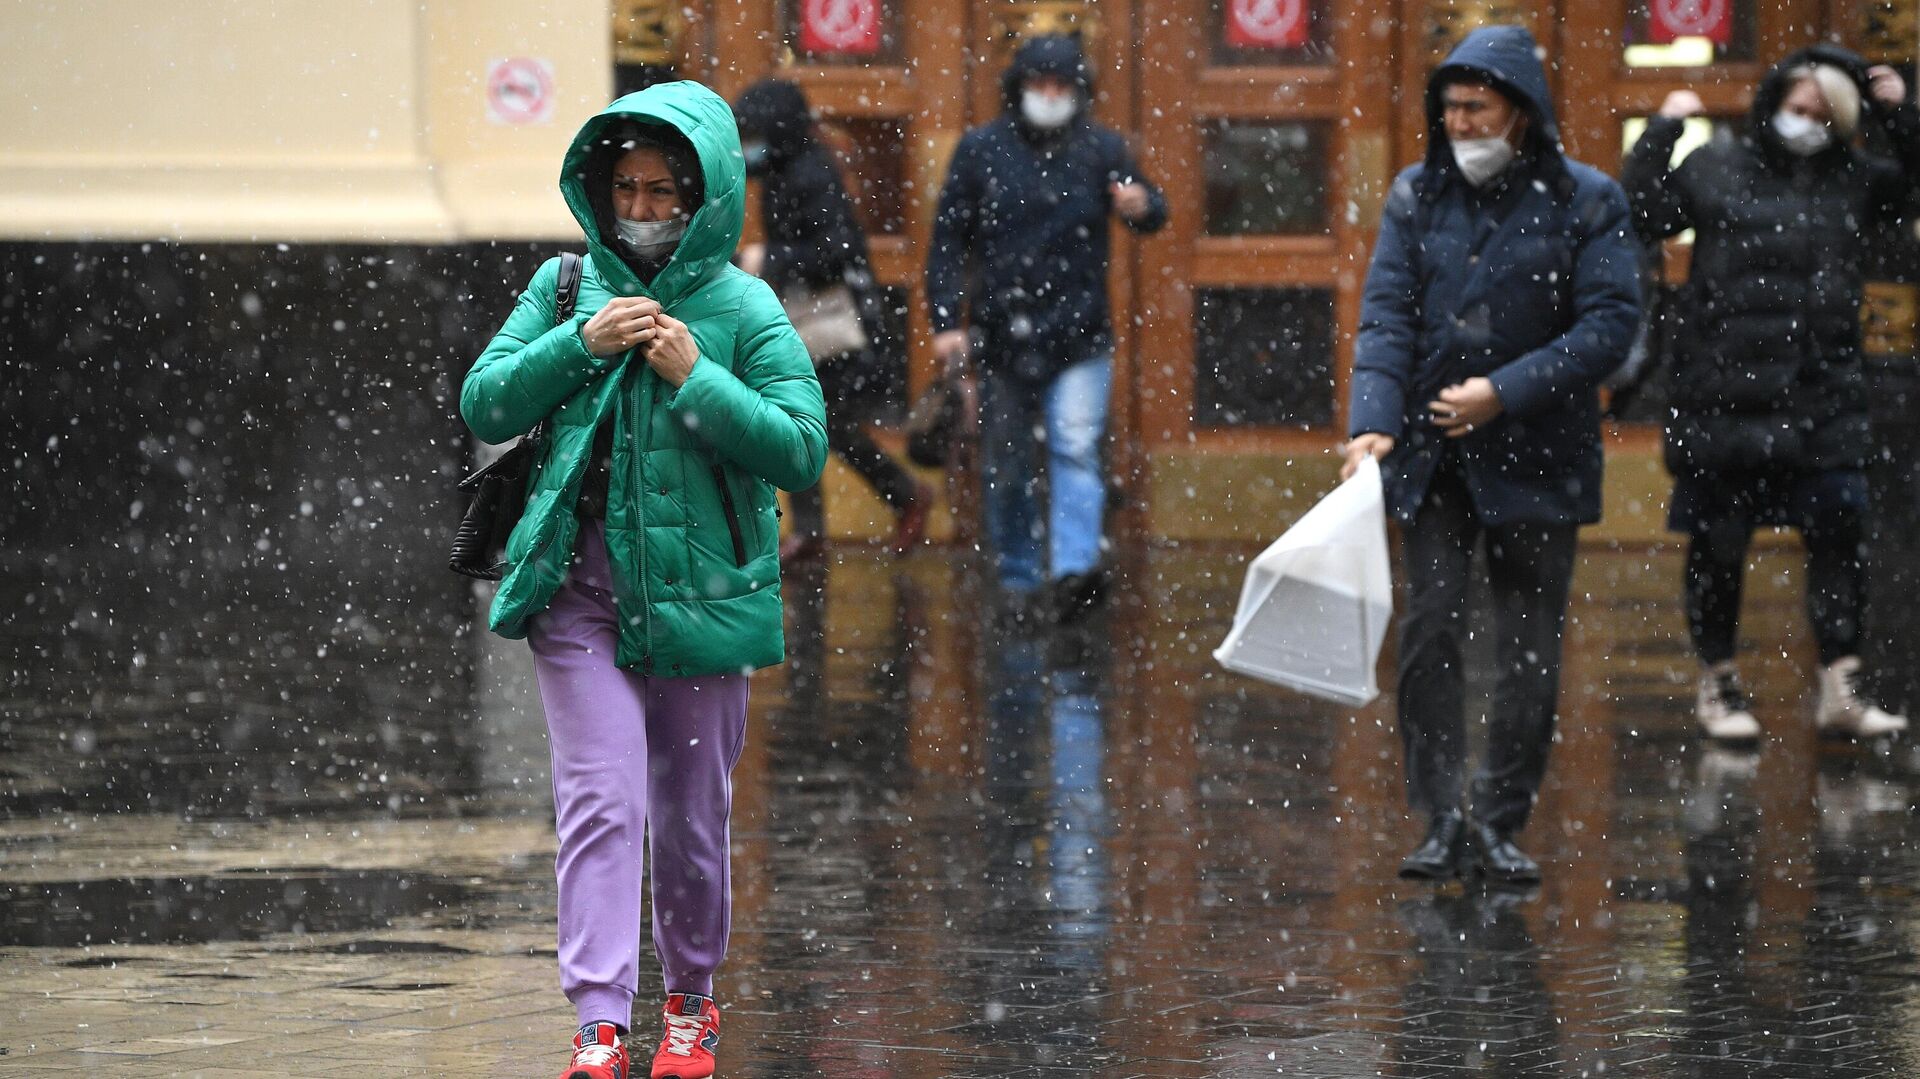 Неприятная погода. Unpleasant weather. Погода в Москве видео сегодня новости. Погода в Москве сейчас гололед.